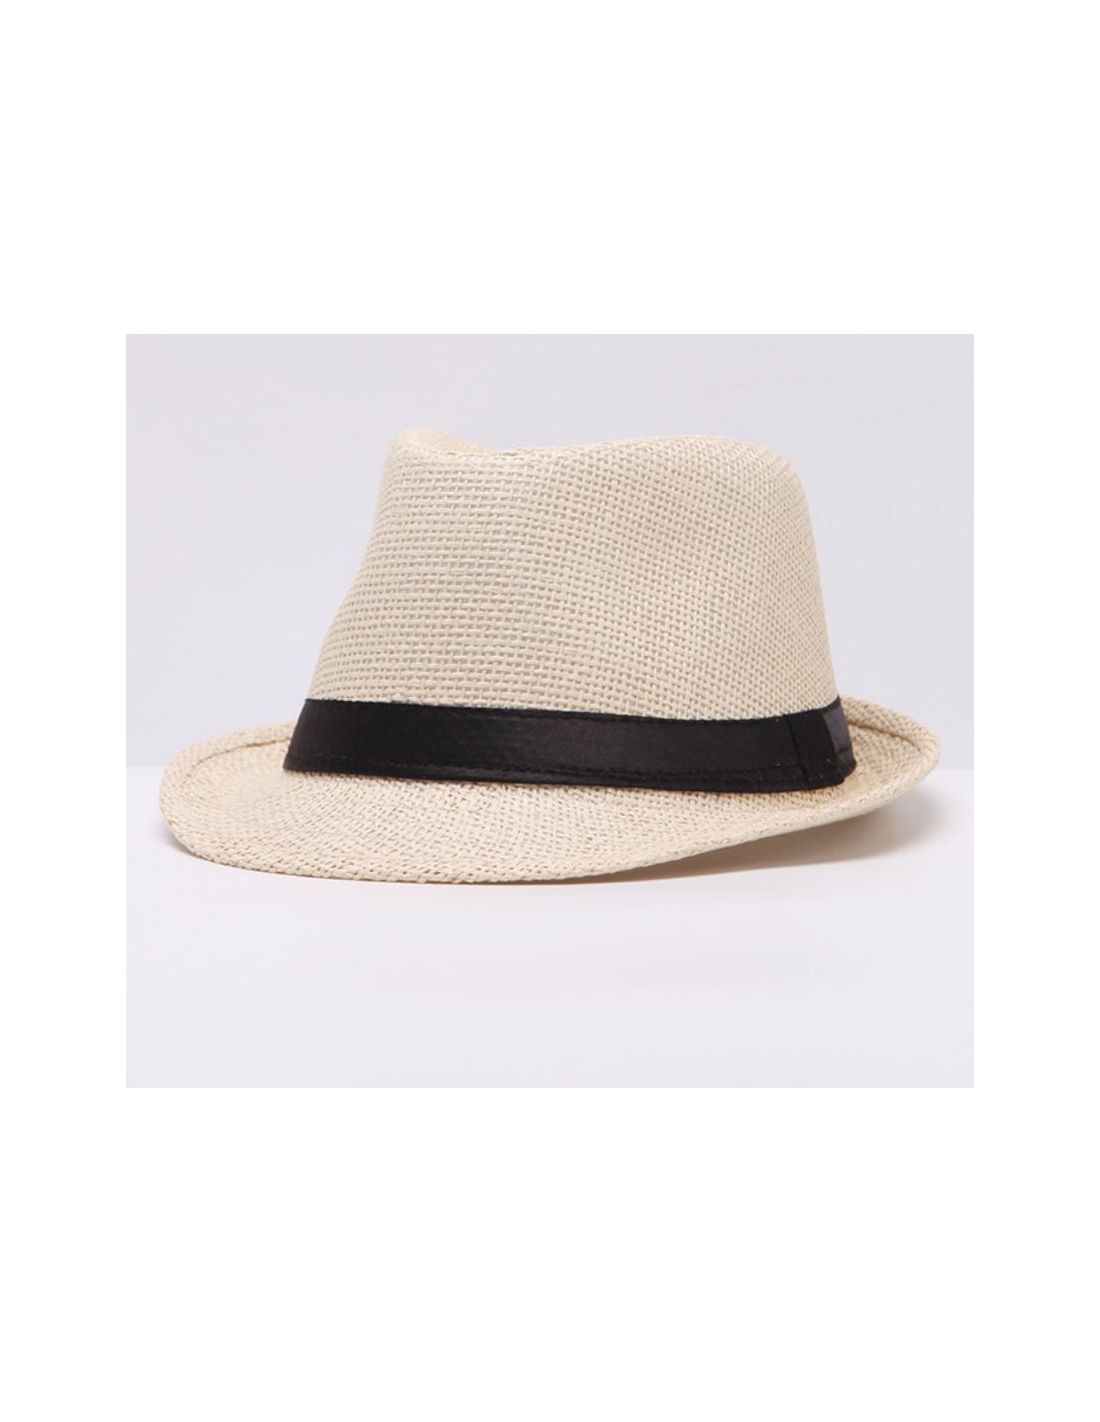 WEROR Sombrero de paja para hombre y mujer sombrero de verano sombrero trilby 153340 